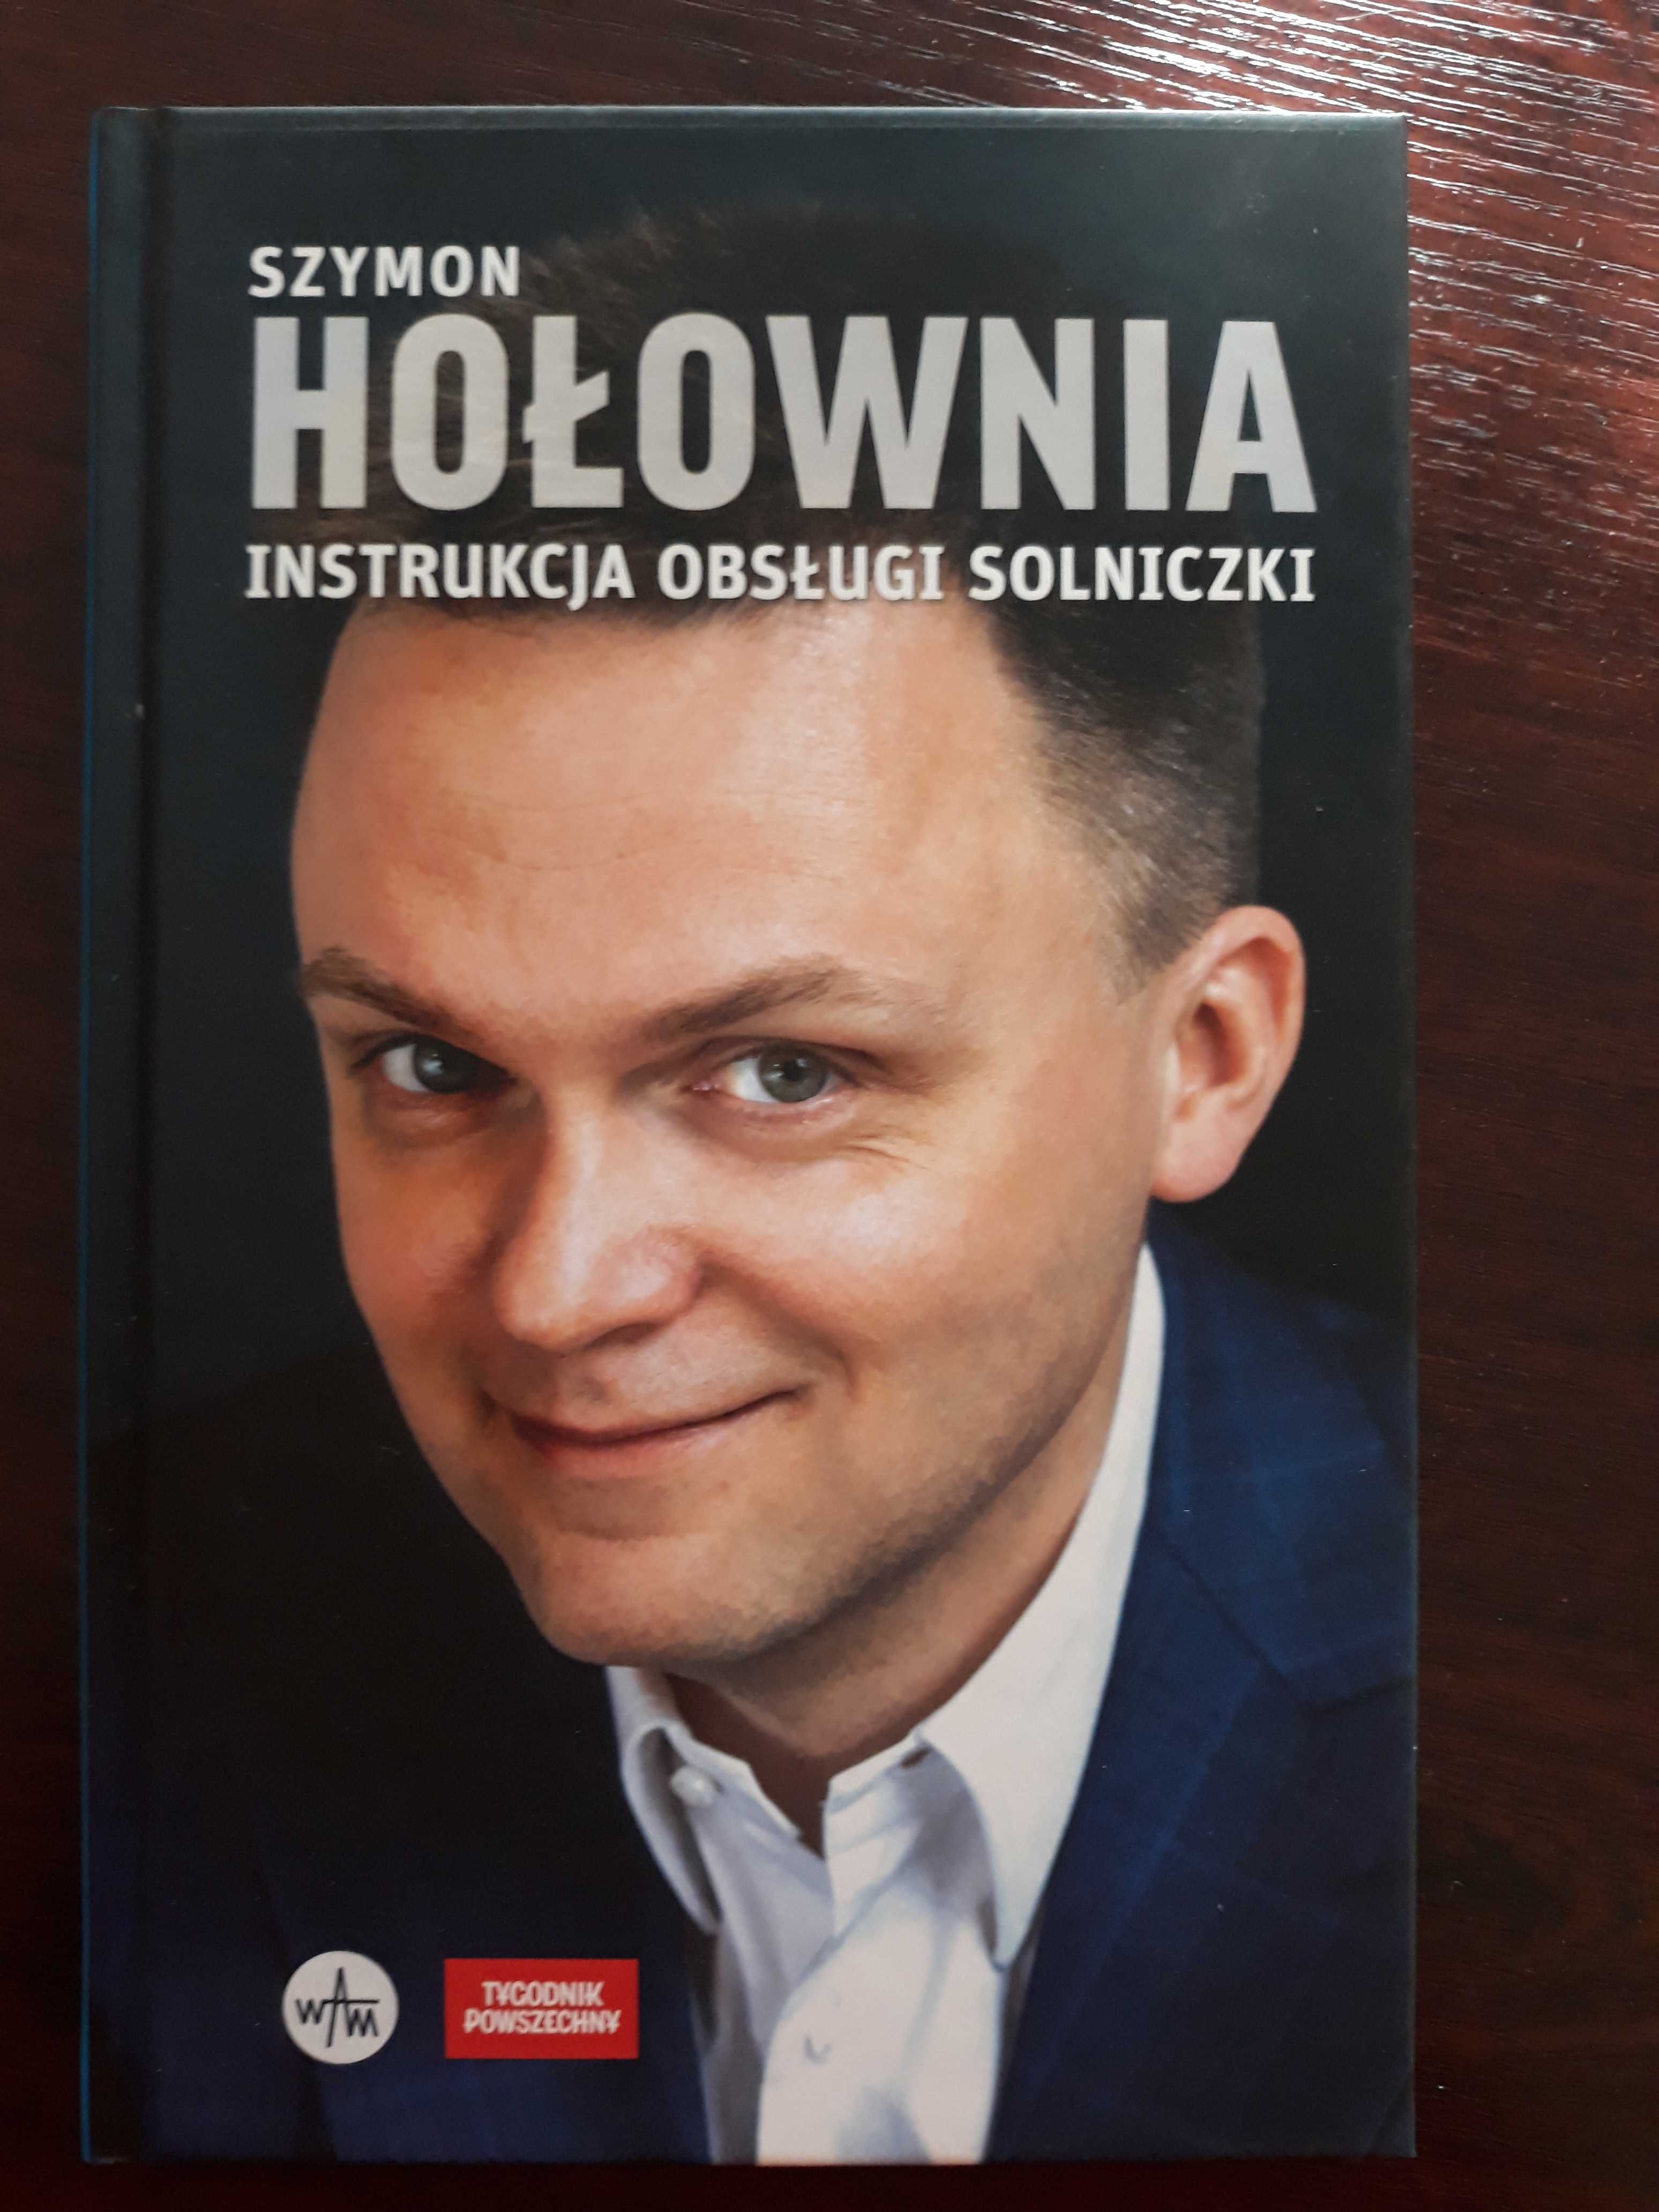 Ksiązka "Instrukcja obsługi solniczki" Szymon Hołownia